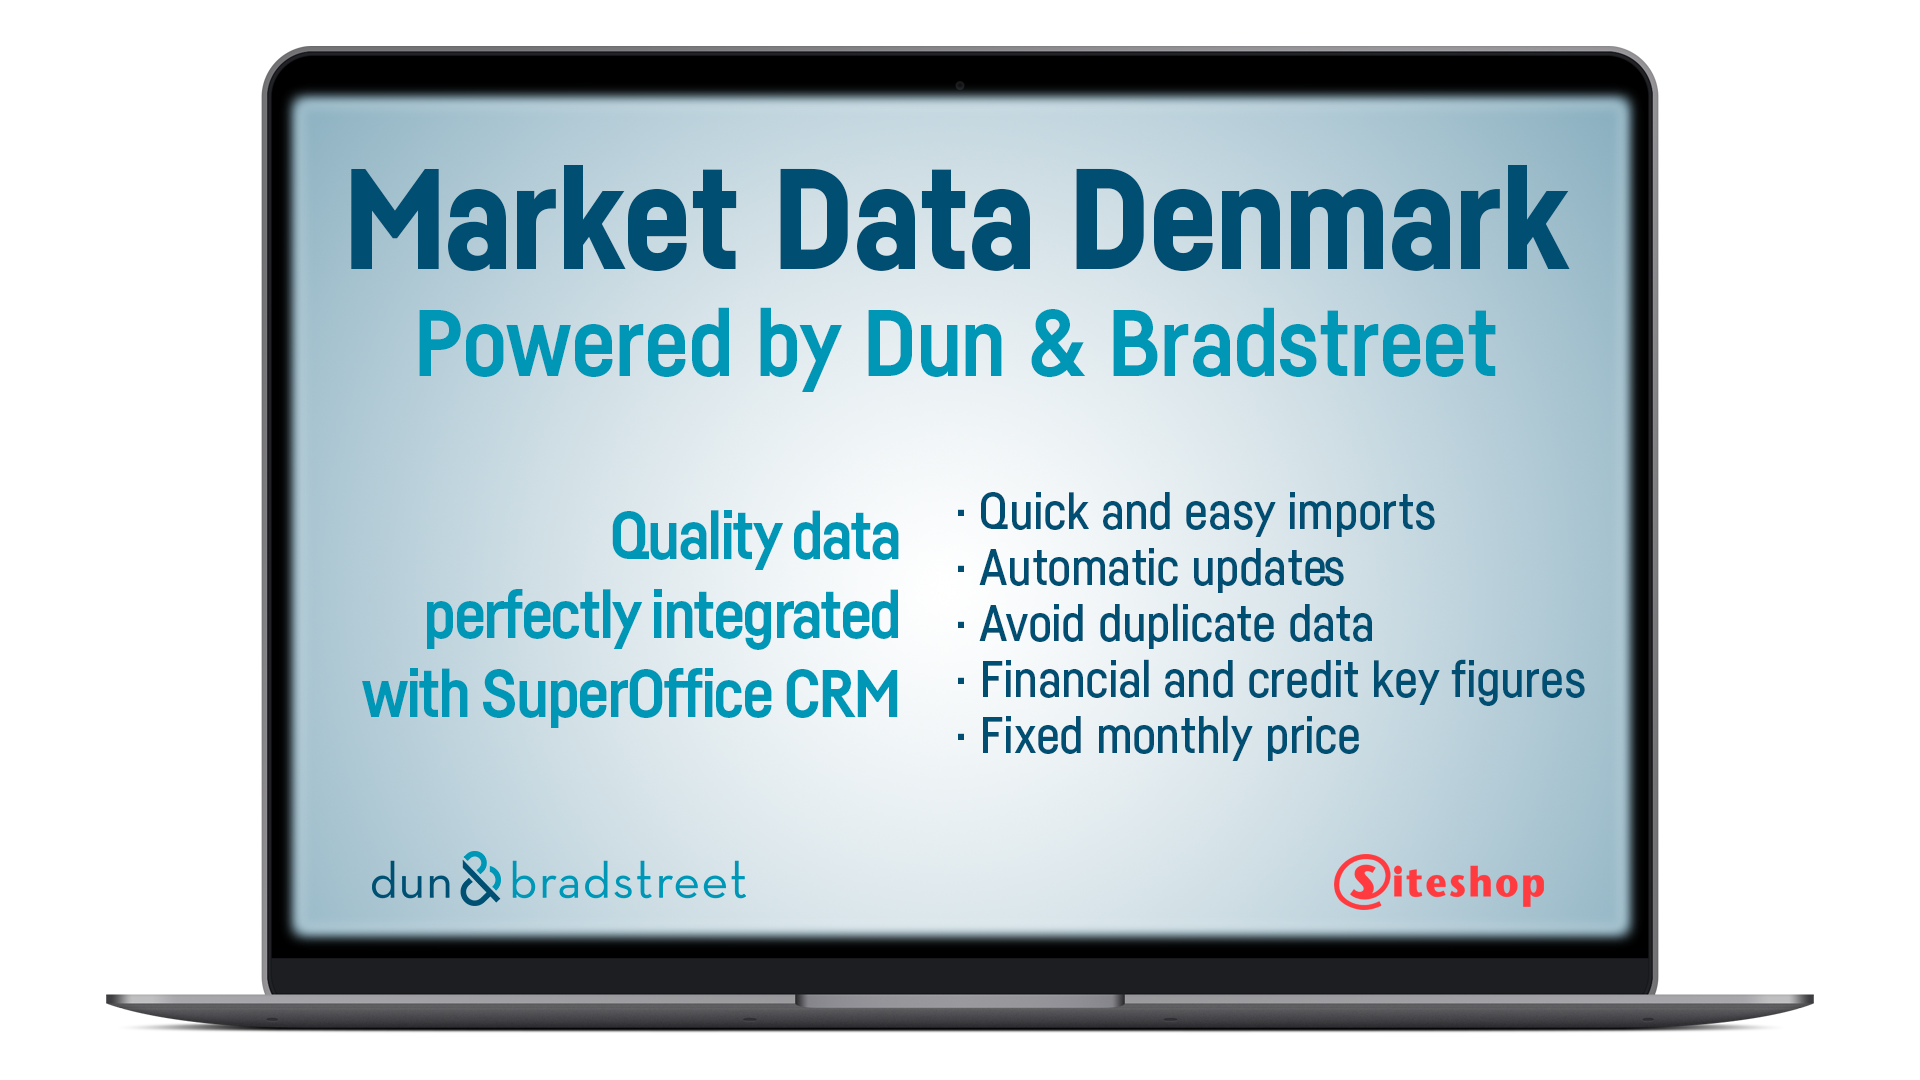 01-siteshop-market-data-denmark.png